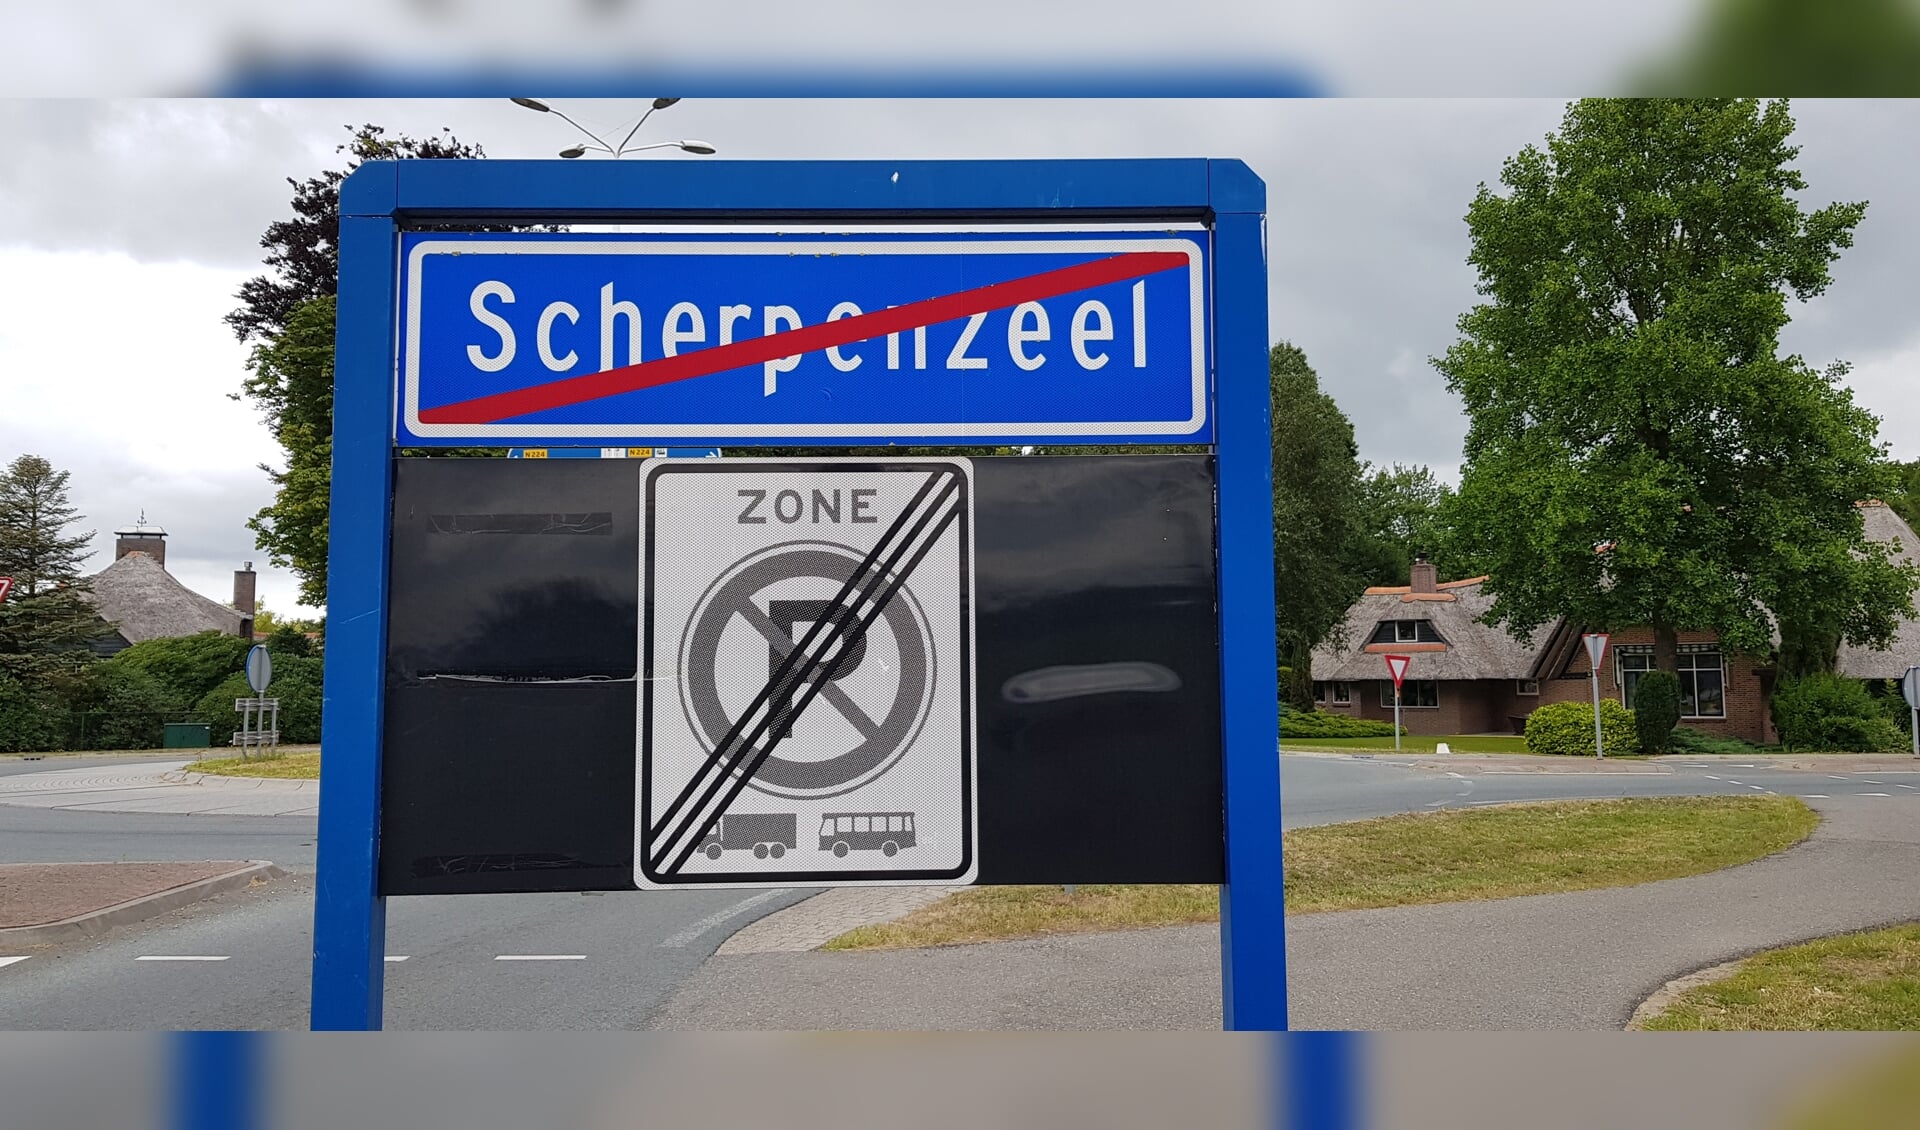 De provincie is een arhi-procedure gestart om tot een fusie van Scherpenzeel en Barneveld te kunnen komen. De gemeente Scherpenzeel heeft daar een een bezwaar tegen indgediend. Dat wordt morgen behandeld. 